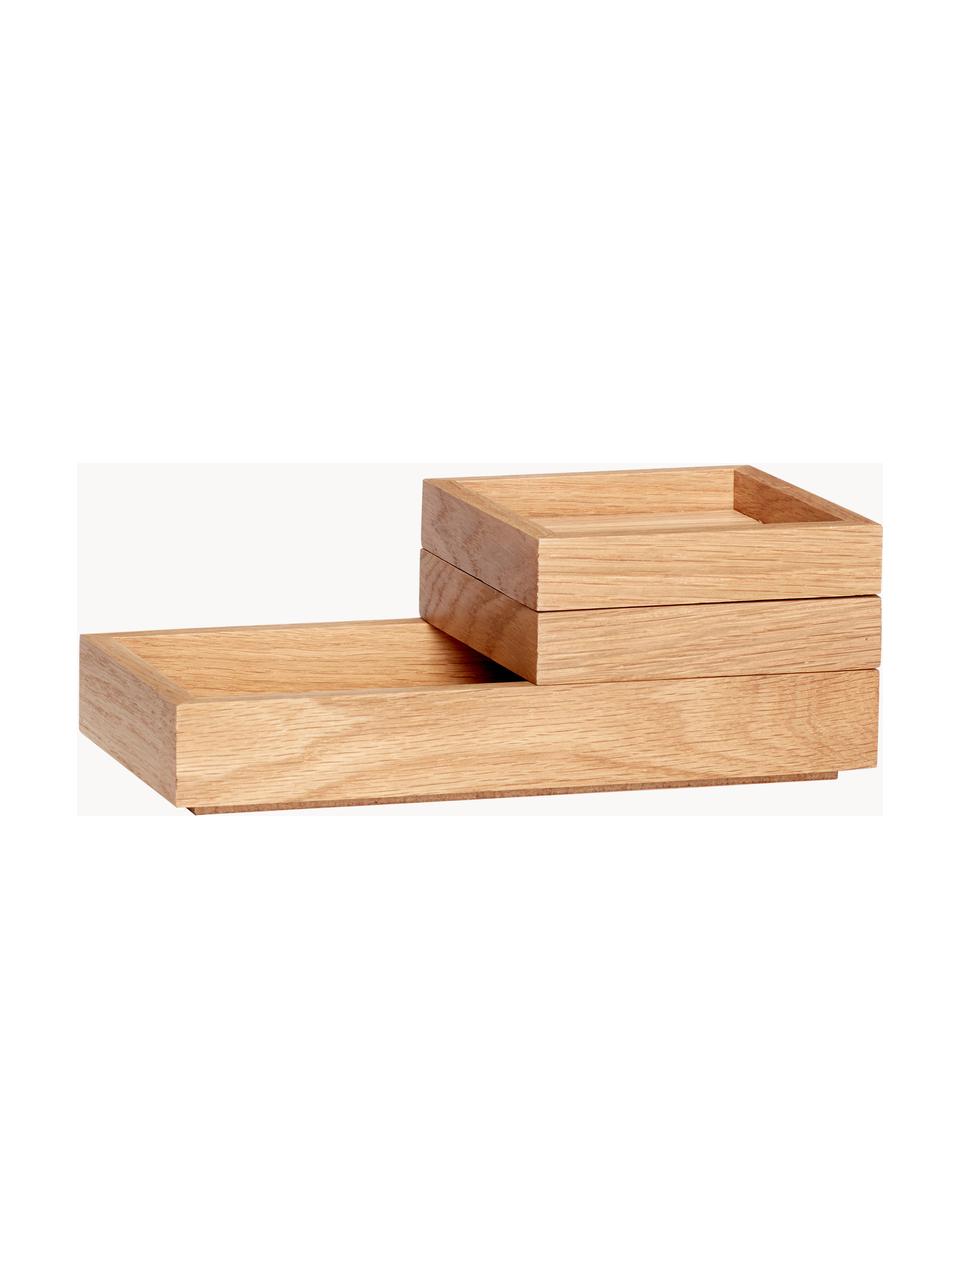 Set de cajas apilables Klara, 3 uds., Chapa de roble, madera de roble con certificado FSC, Madera de roble, Set de diferentes tamaños